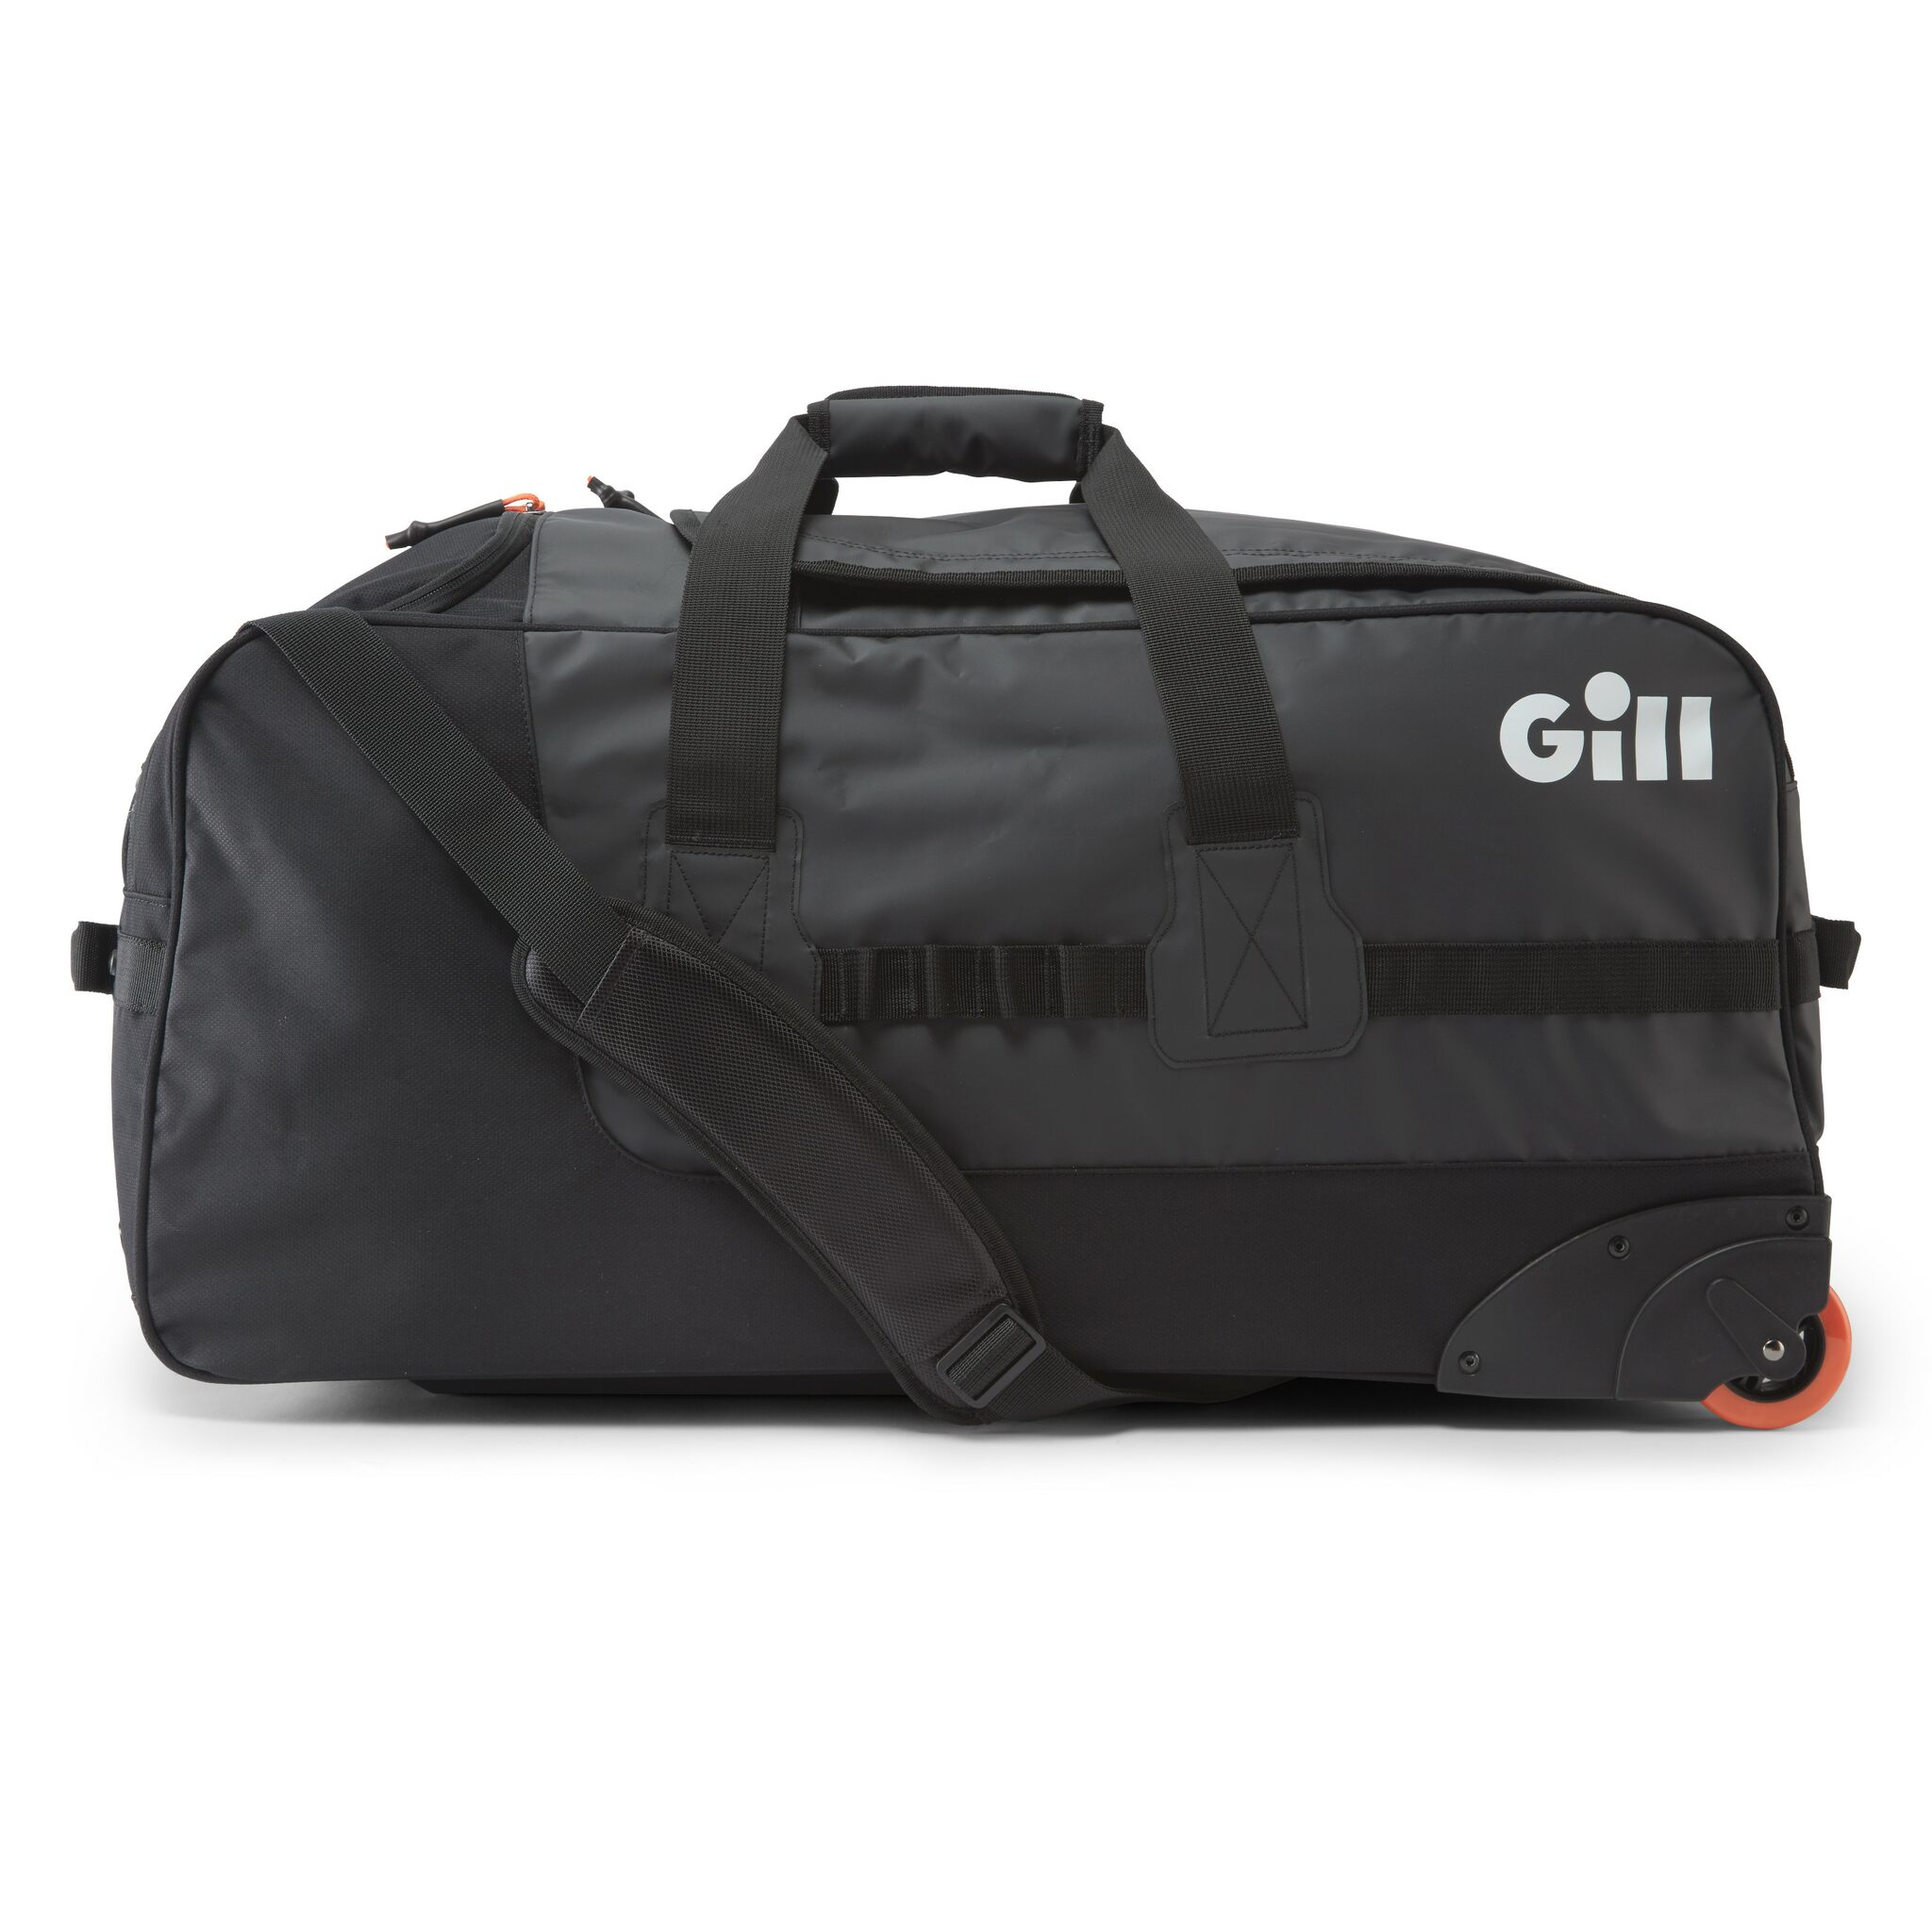 Gill COMPACT BAG